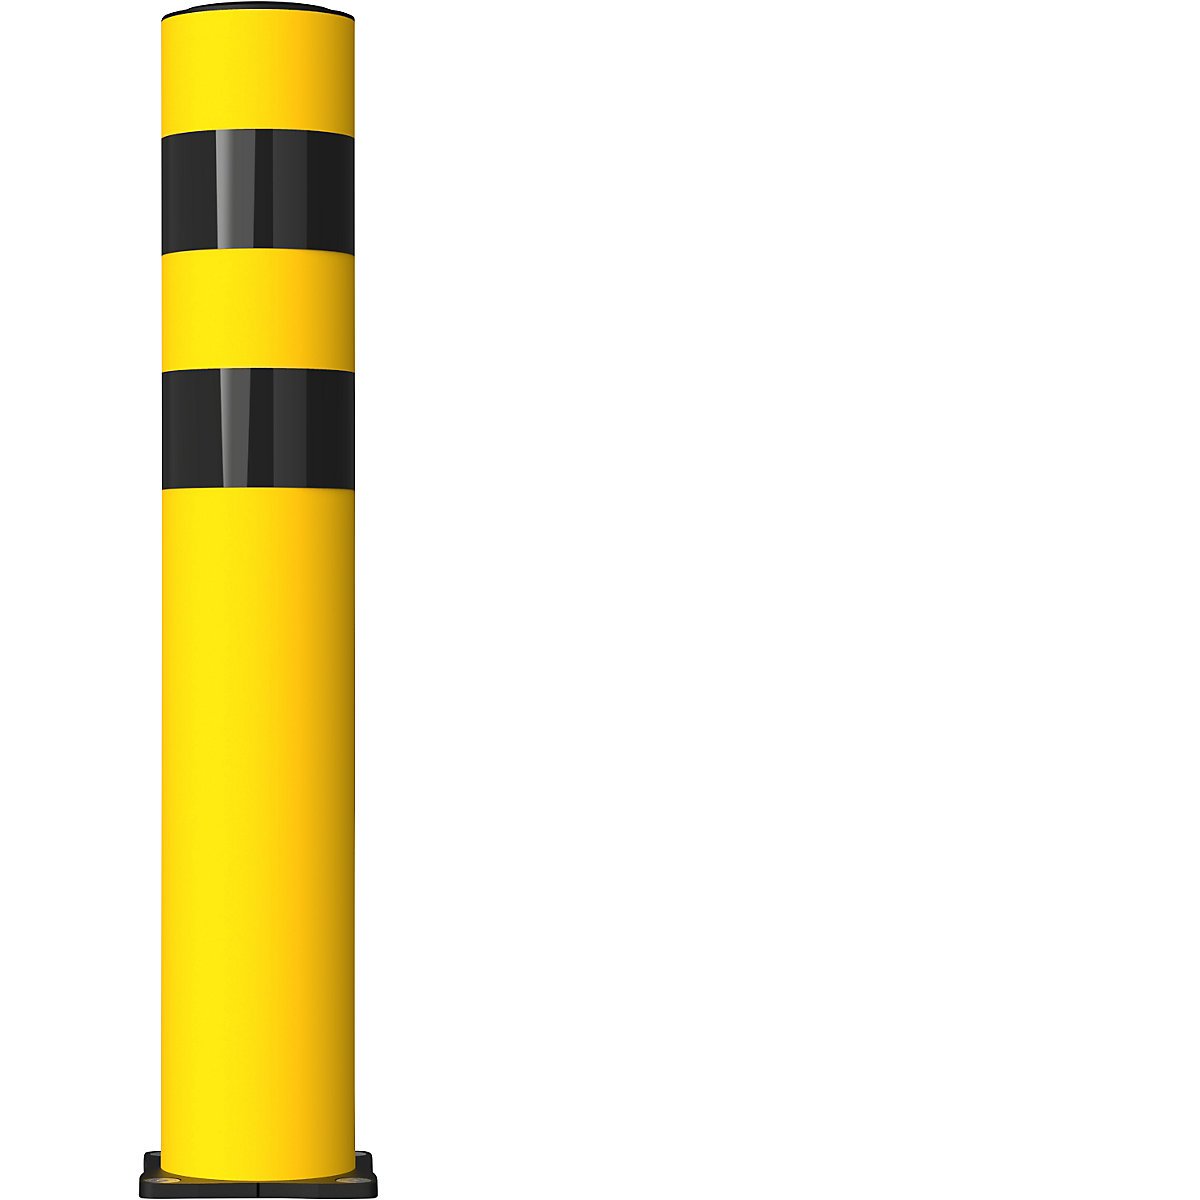 FLEX IMPACT Rammschutzpoller, Ø 125 mm, Höhe 750 mm, gelb, Edelstahl Bodenplatte